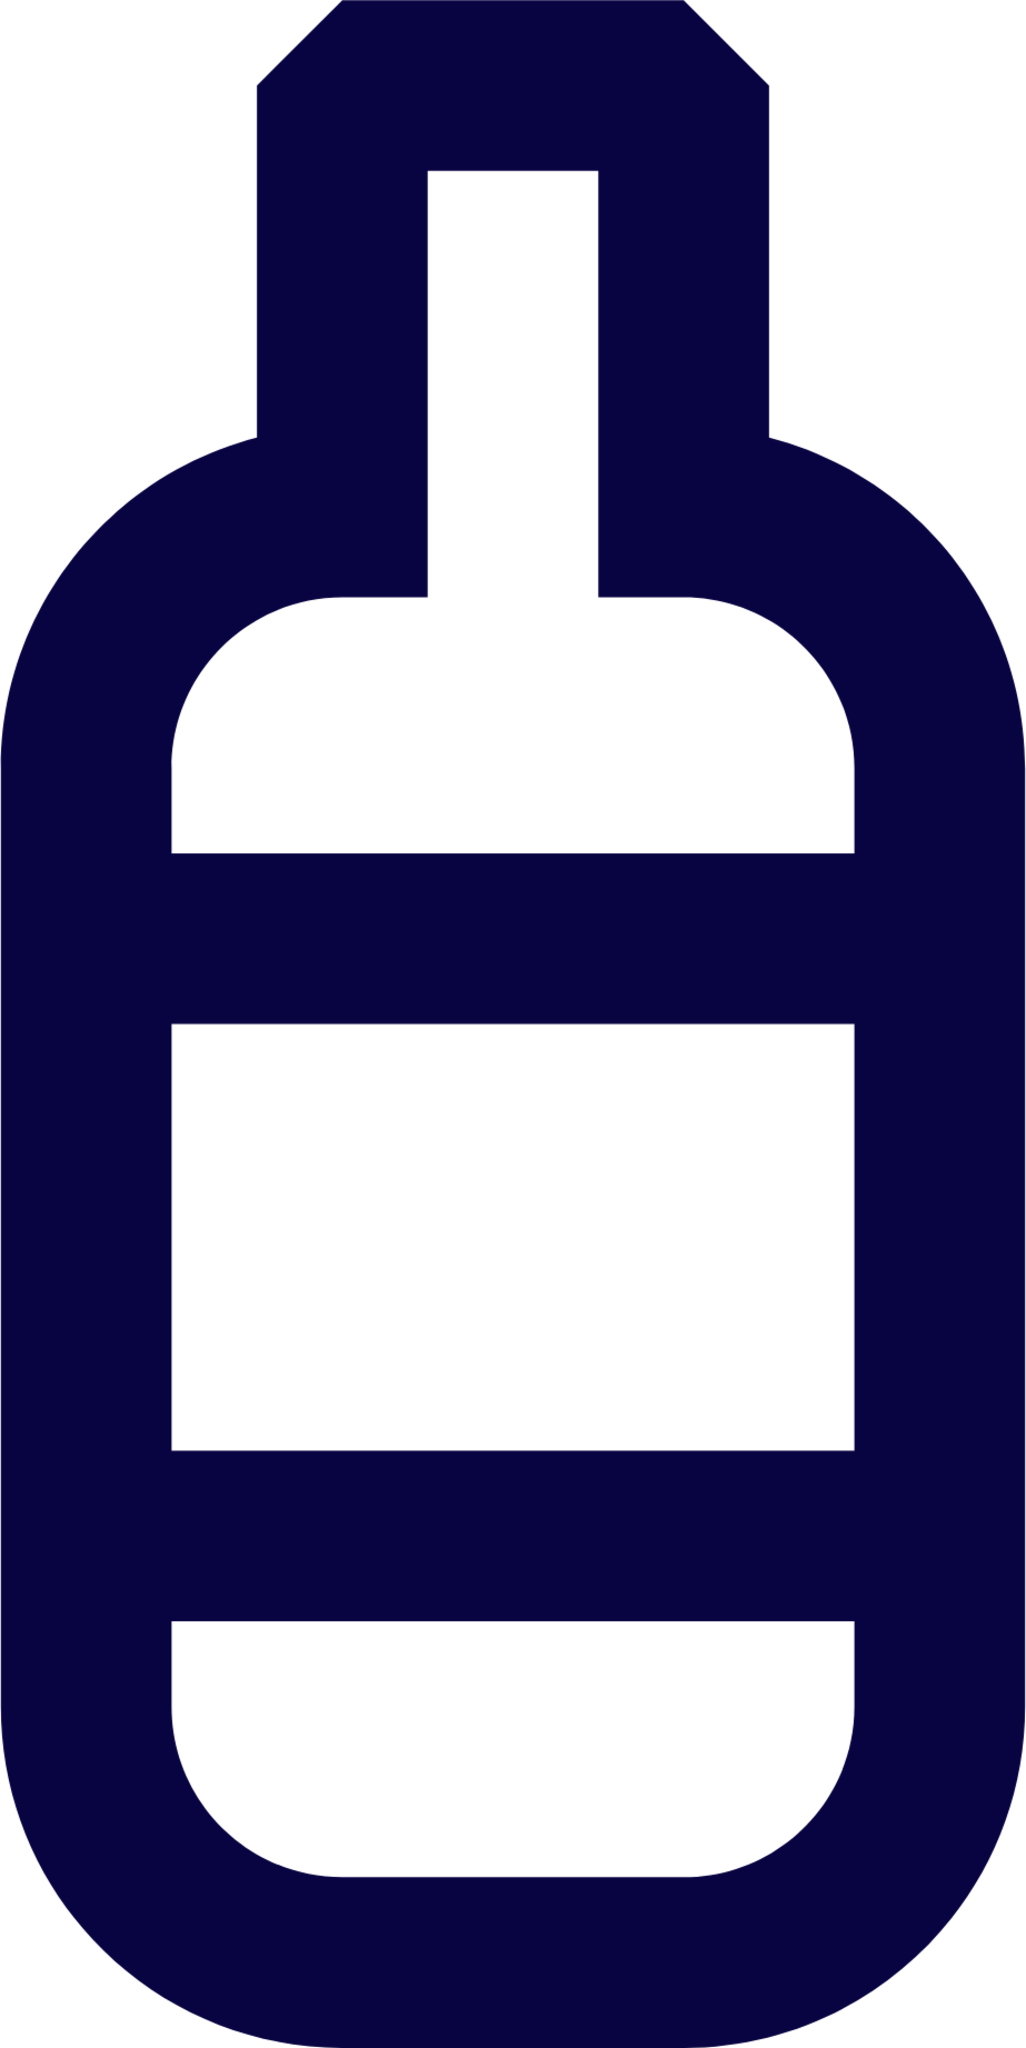 bottle 1 icon